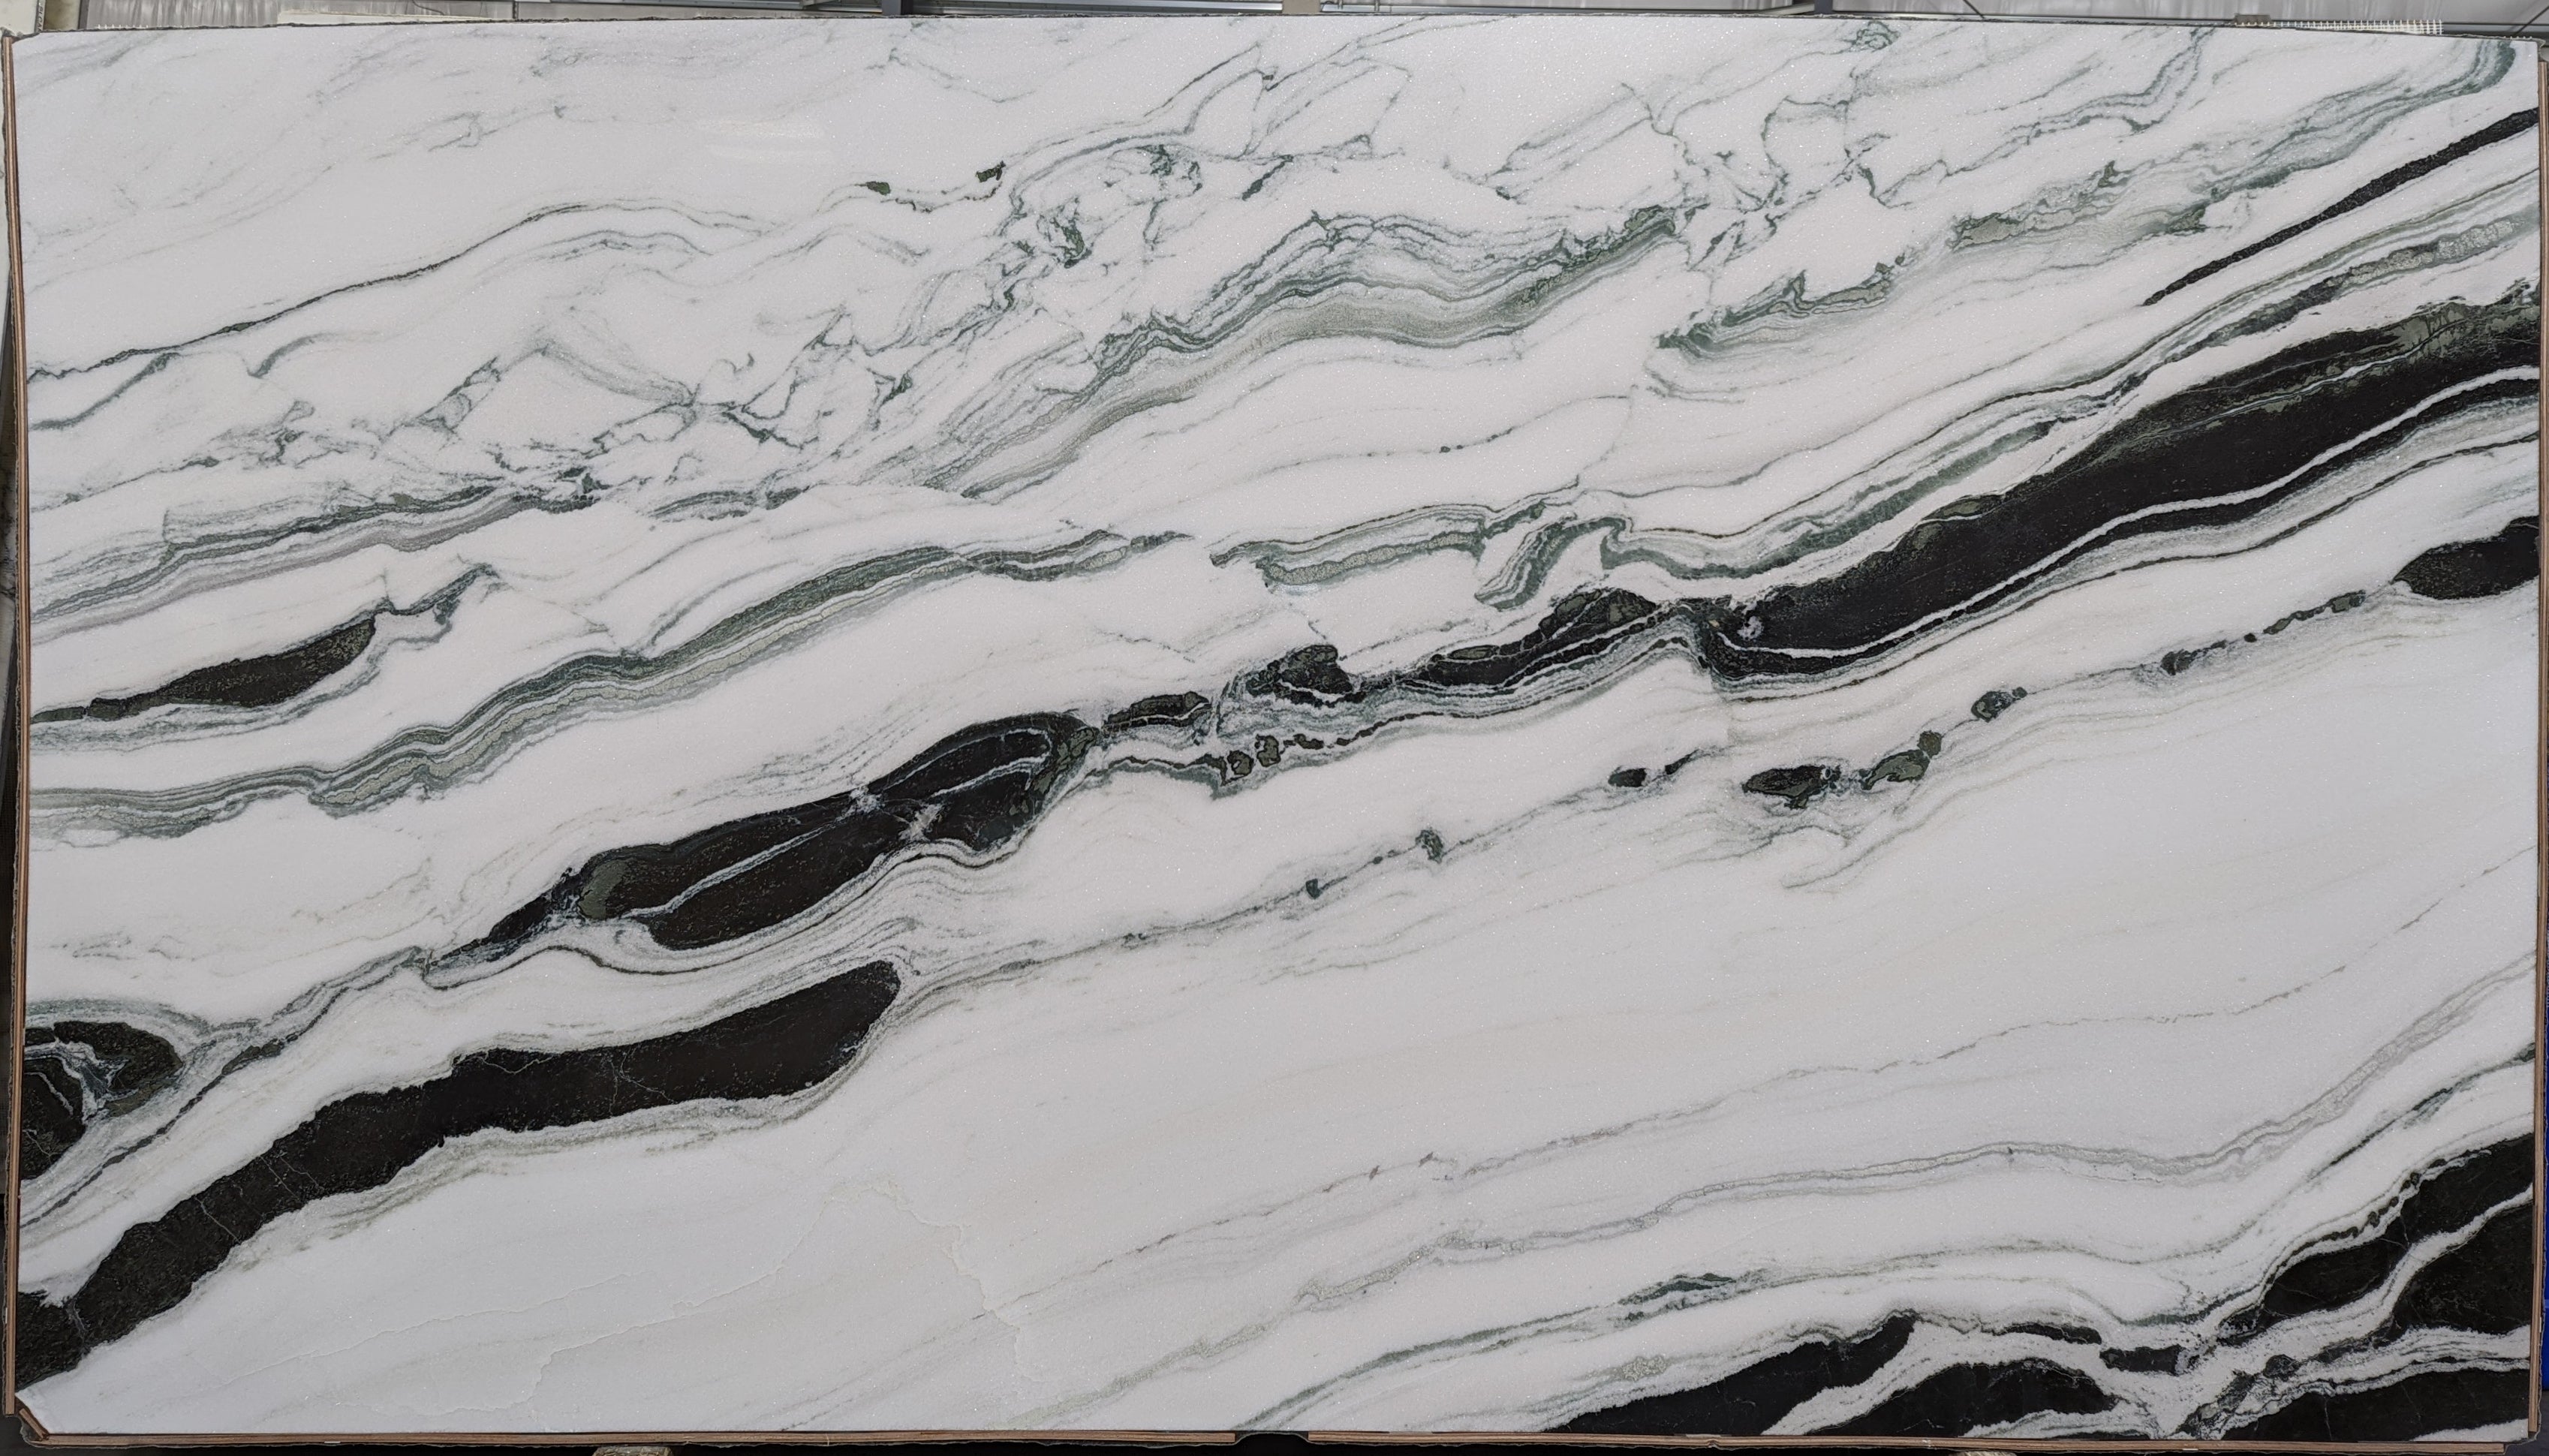  Panda White Marble Slab 3/4  Polished Stone - P40721#11 -  65x118 